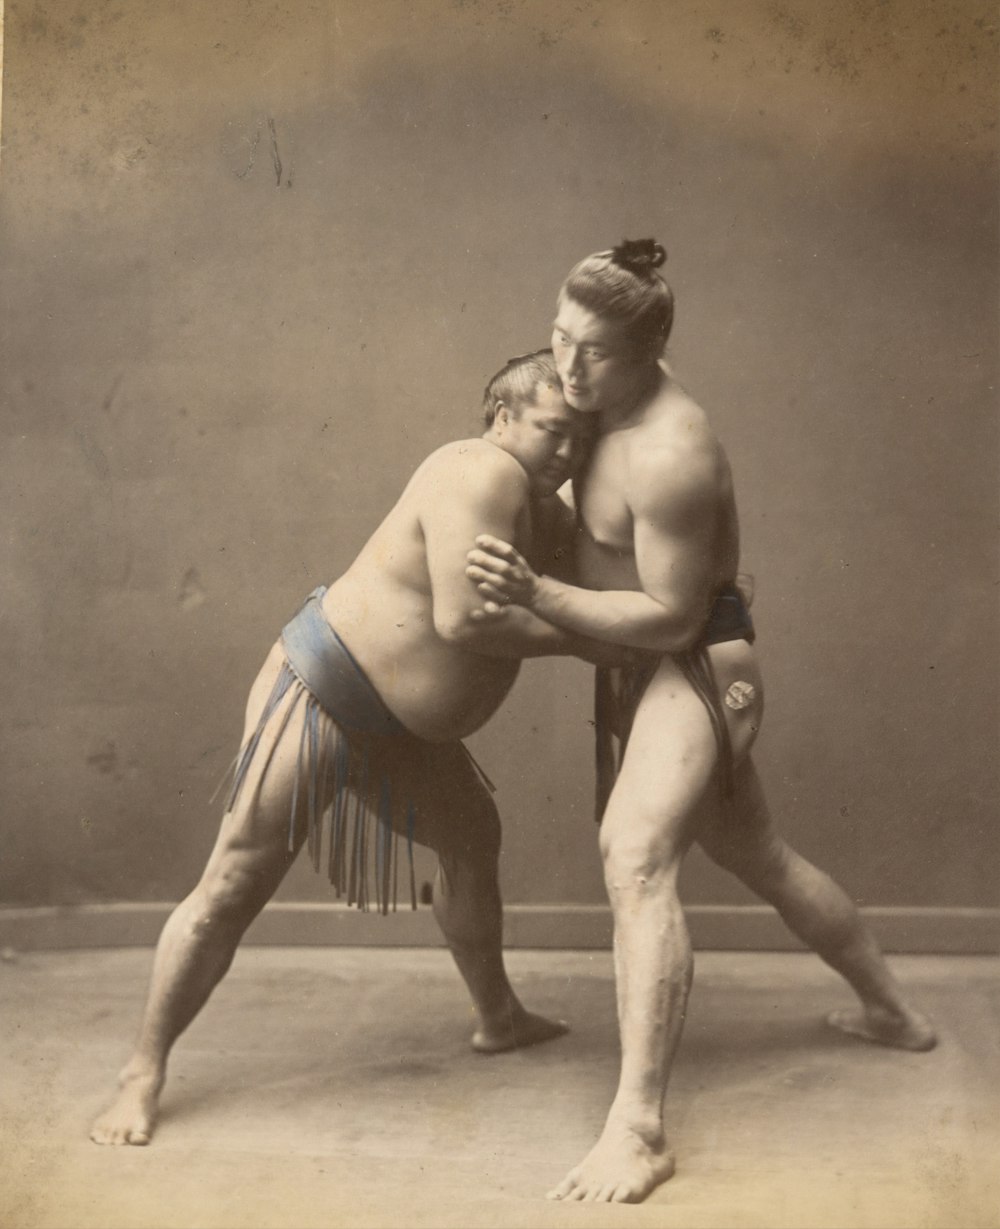 Imagen histórica de los luchadores de sumo en 1870